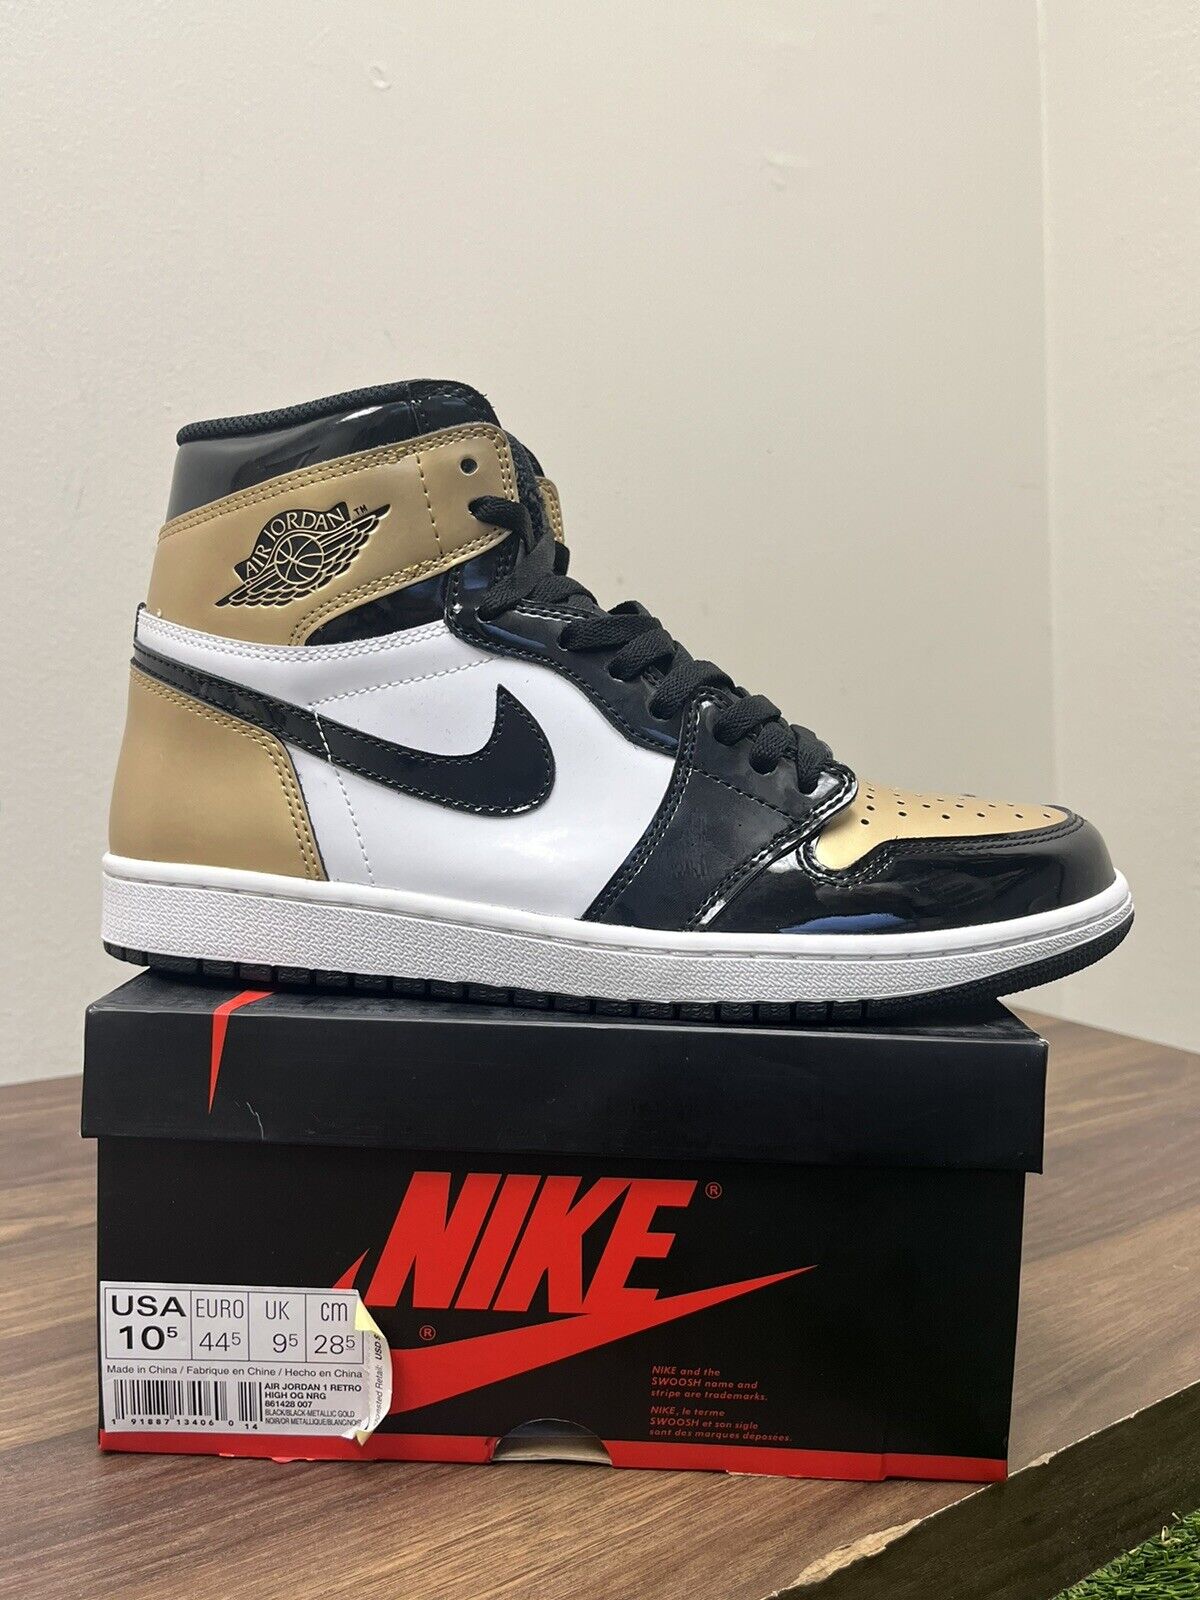 Size 10.5 - Jordan 1 Retro High OG NRG Gold Toe 2018